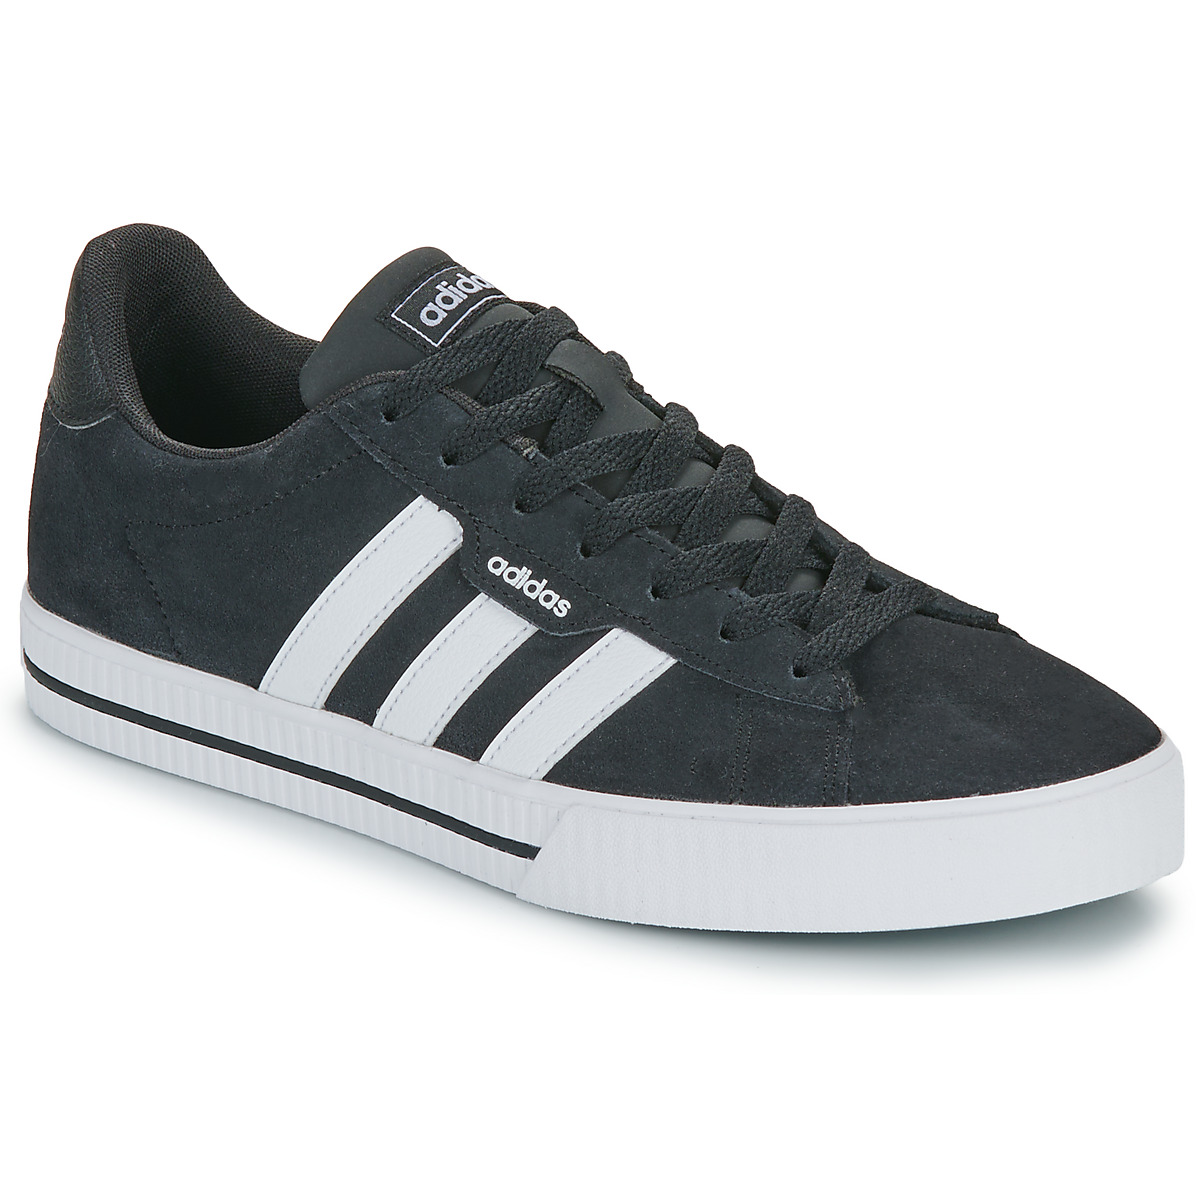 Adidas Daily 3.0 heren sneakers zwart/wit - Maat 42 - Echt leer